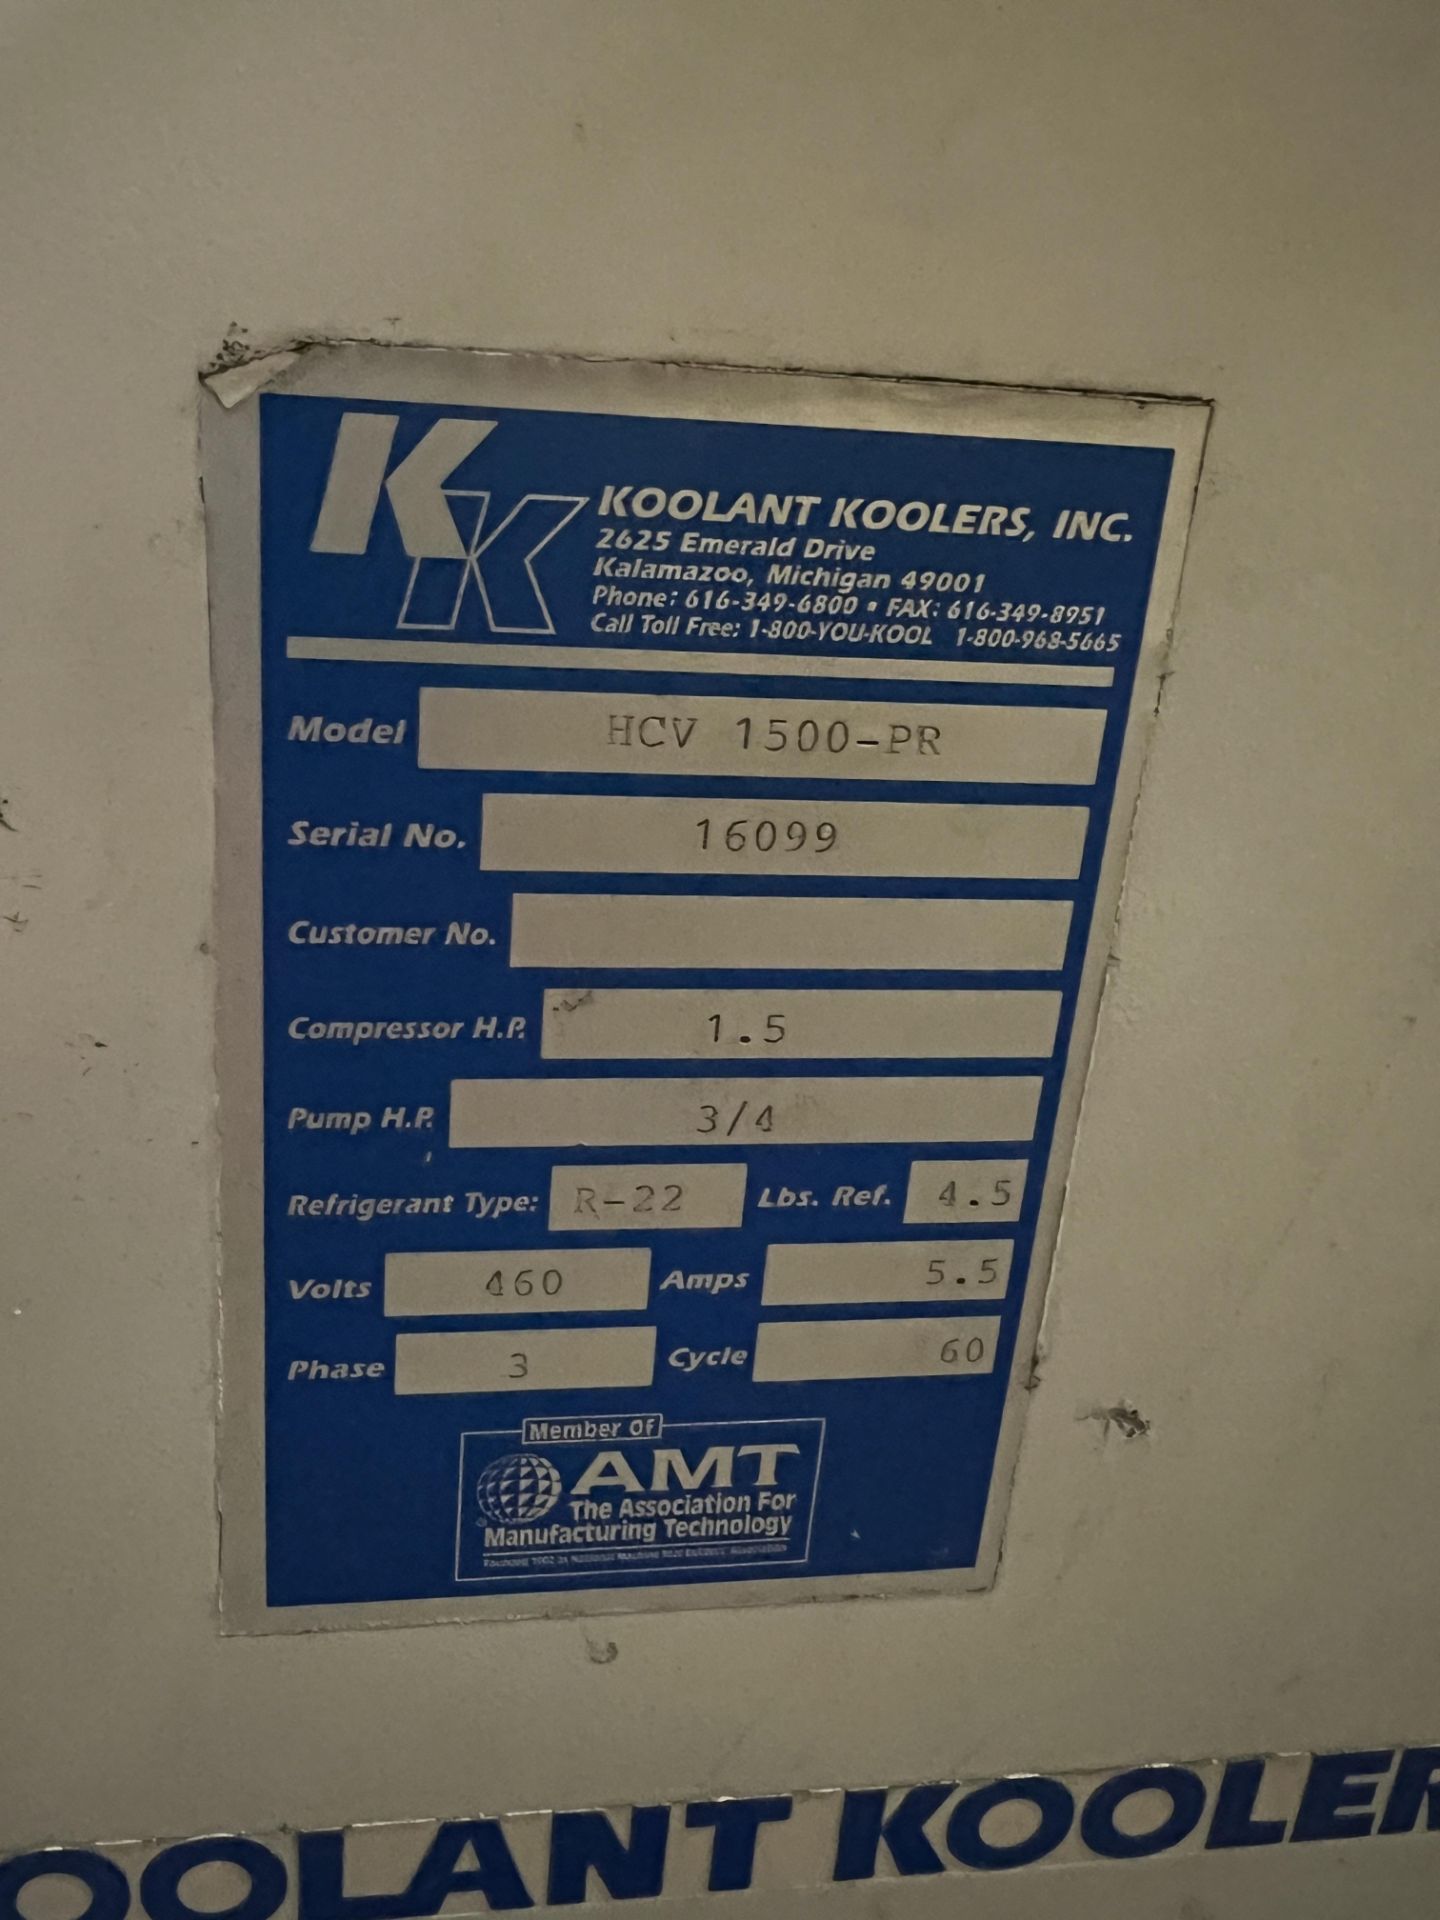 Koolant Koolers Model HCV 1500-PR Chiller Compressor - Image 5 of 5